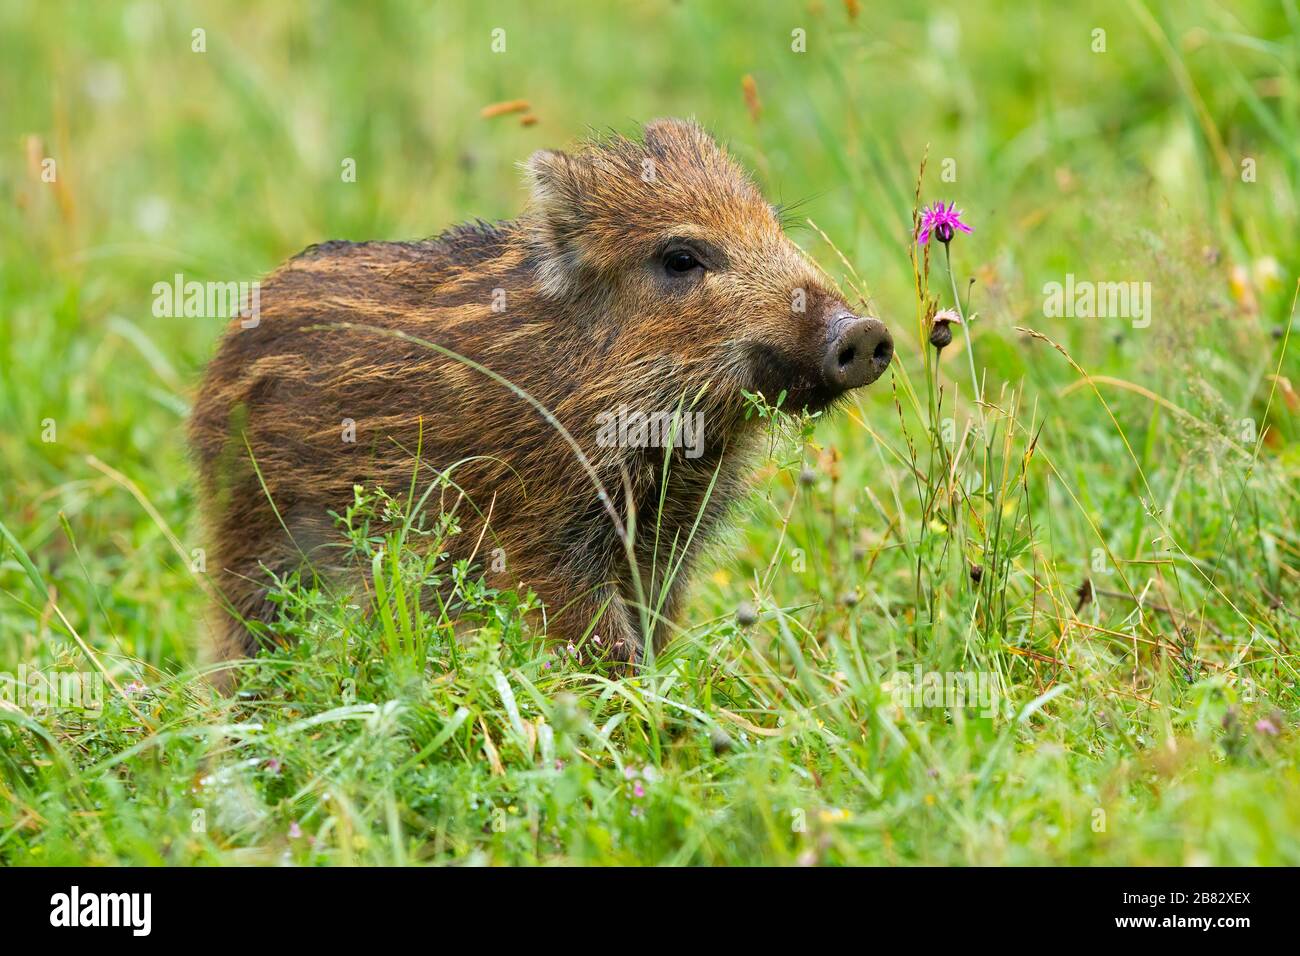 Wunderschönes Wildschwein-Ferkel, das im Frühjahr mit einer Schnauze auf der Wiese mit grünem Gras schnüffelt Stockfoto